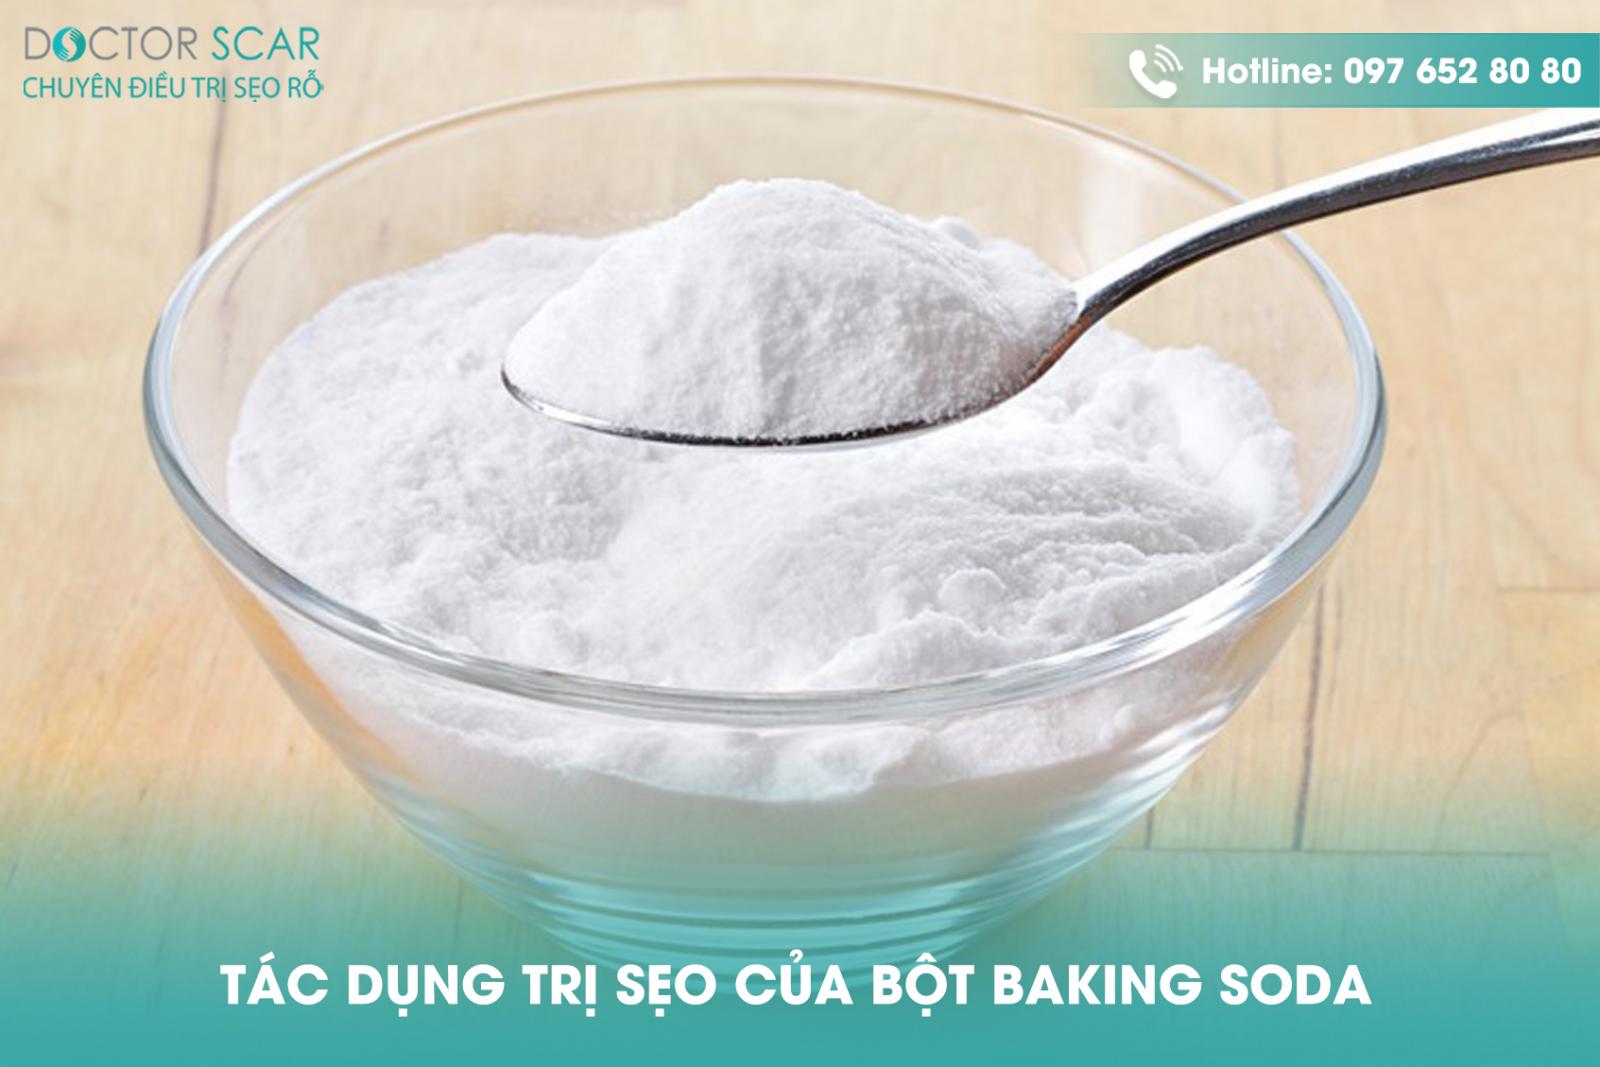 Tác dụng trị sẹo của bột baking soda